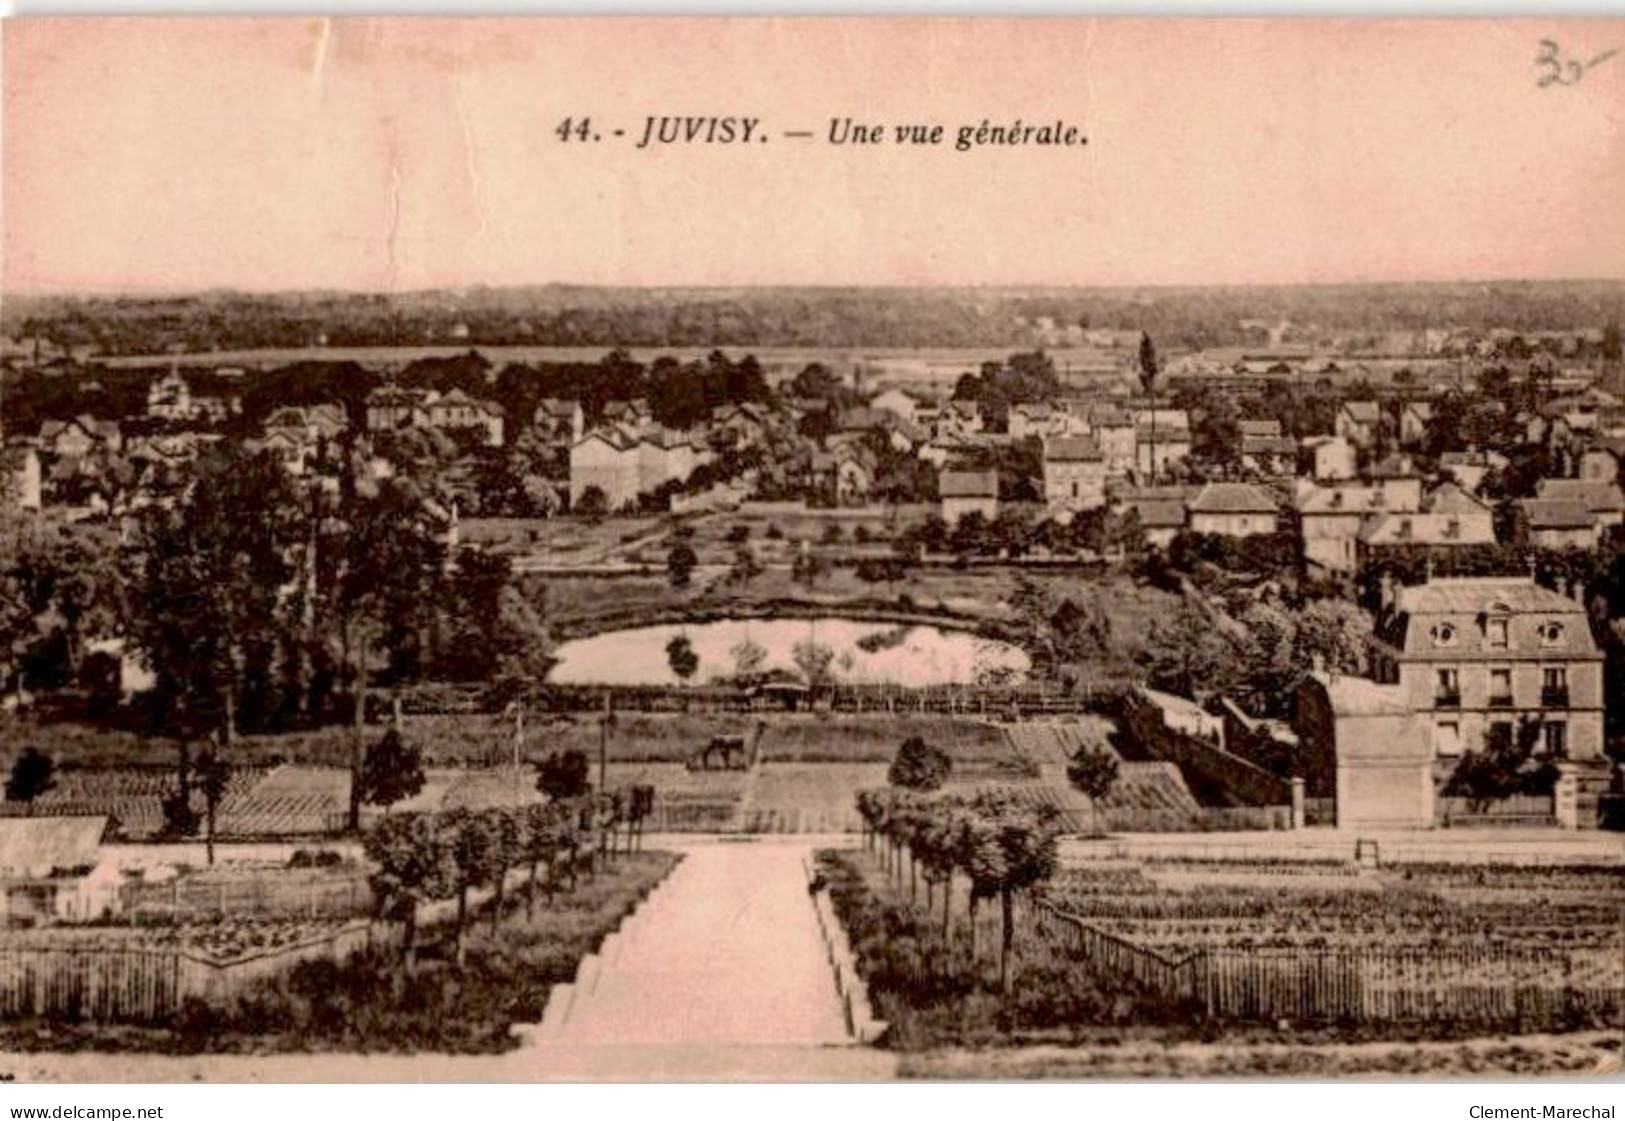 JUVISY-sur-ORGE: Une Vue Générale - état - Juvisy-sur-Orge